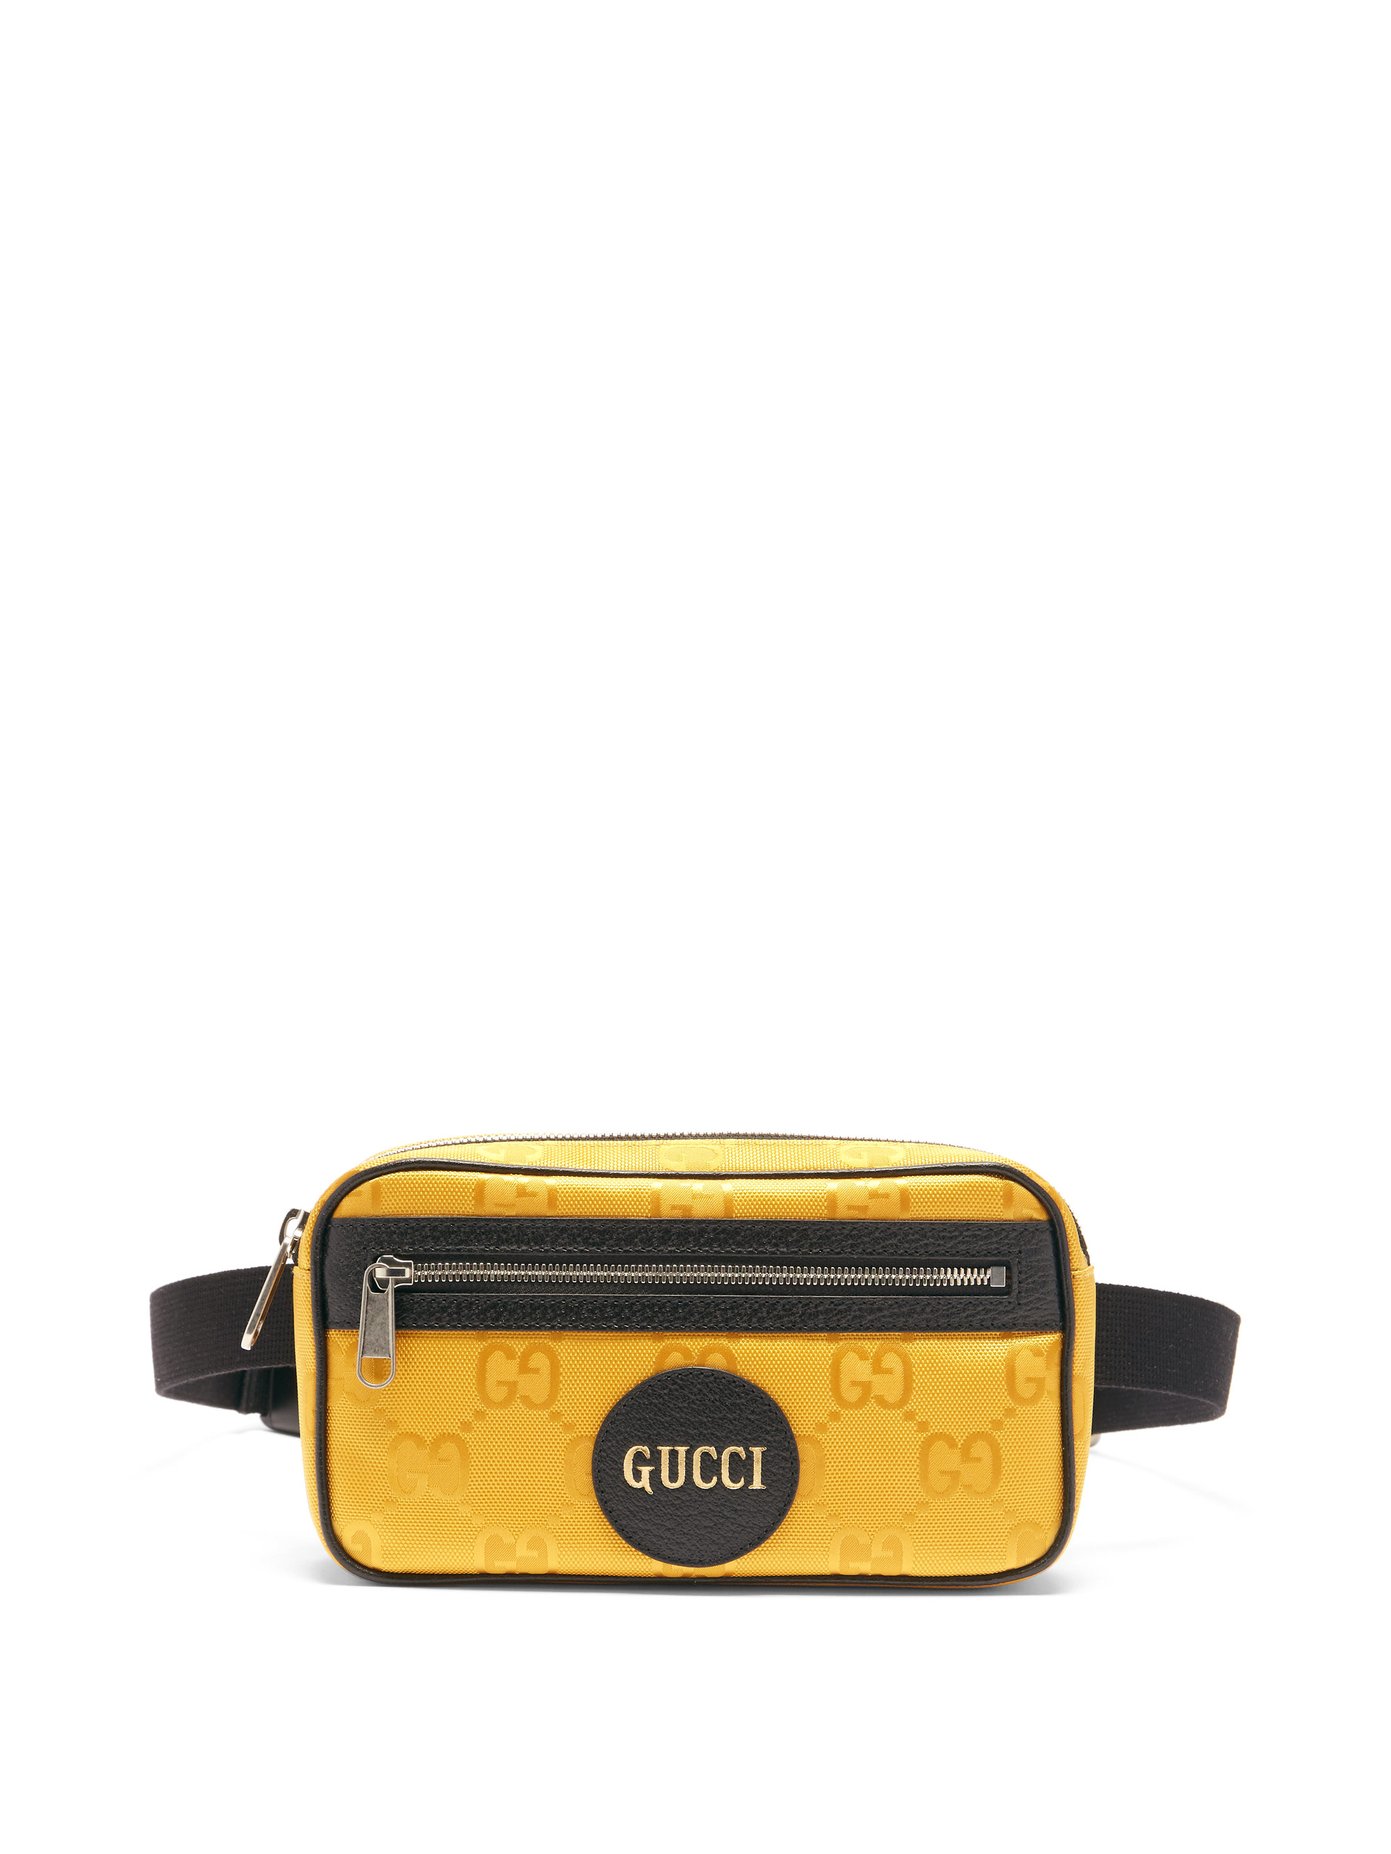 buy gucci belt bag